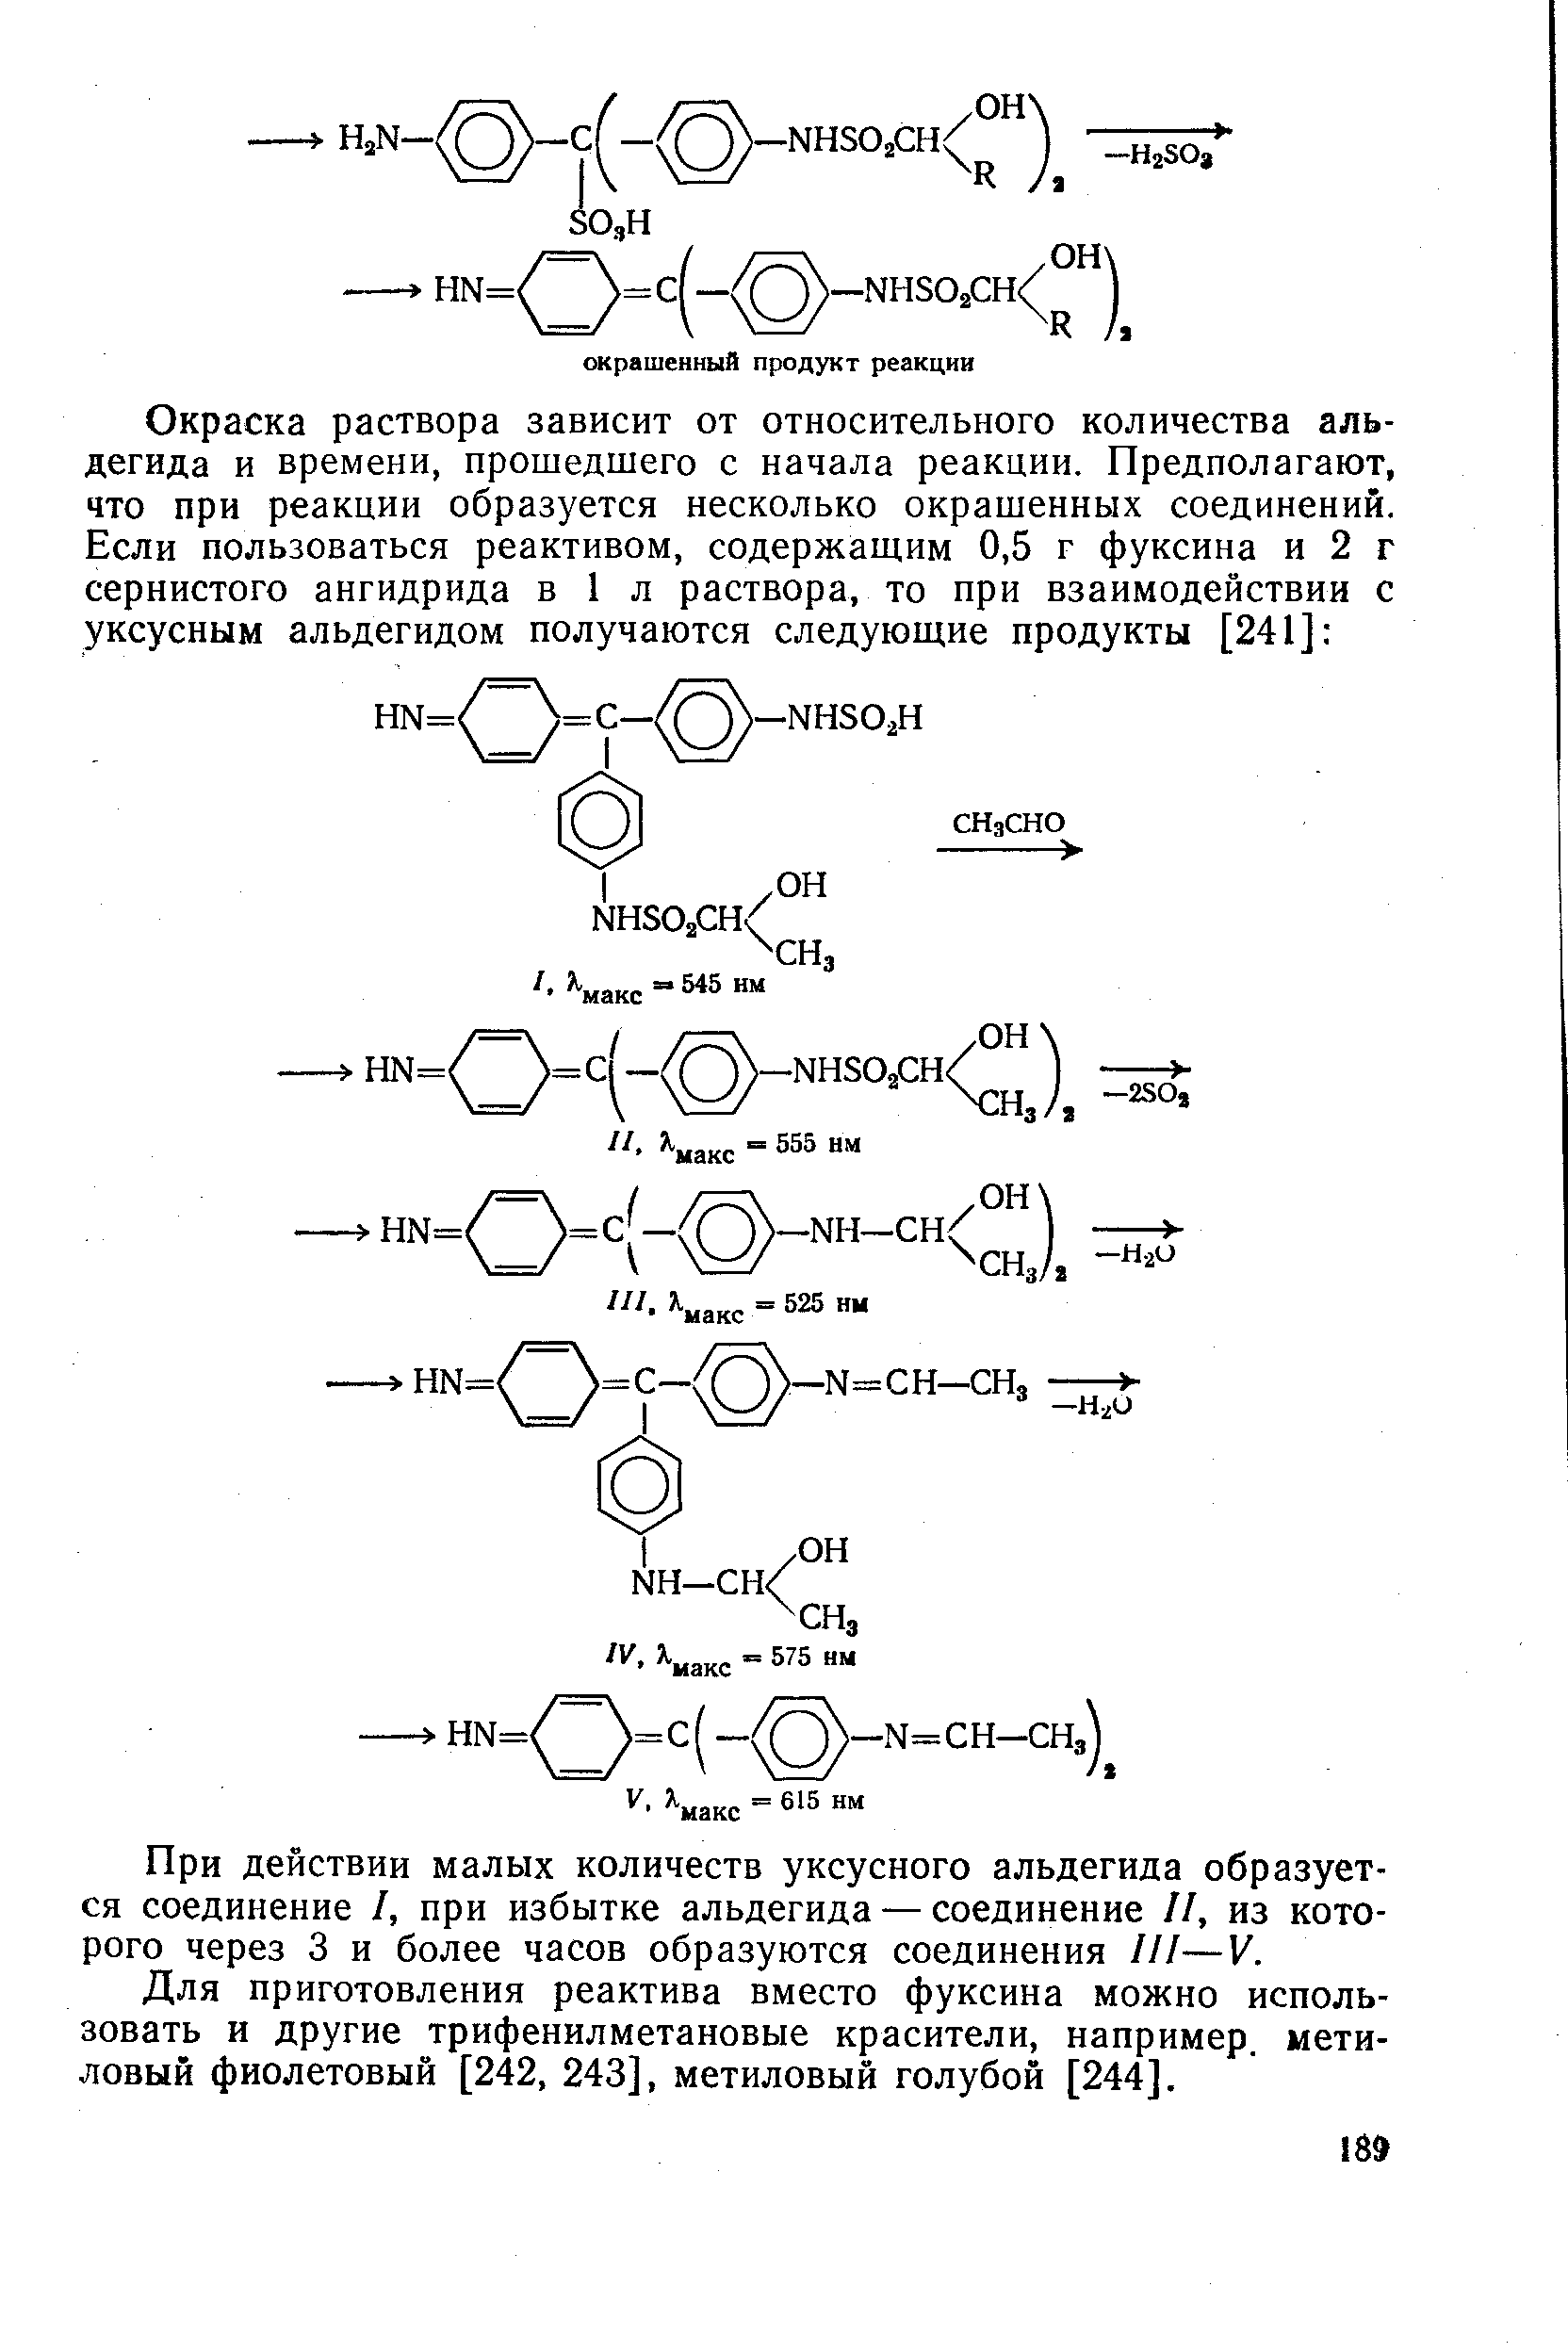 При действии малых количеств уксусного альдегида образуется соединение I, при избытке альдегида — соединение II, из которого через 3 и более часов образуются соединения III—V.